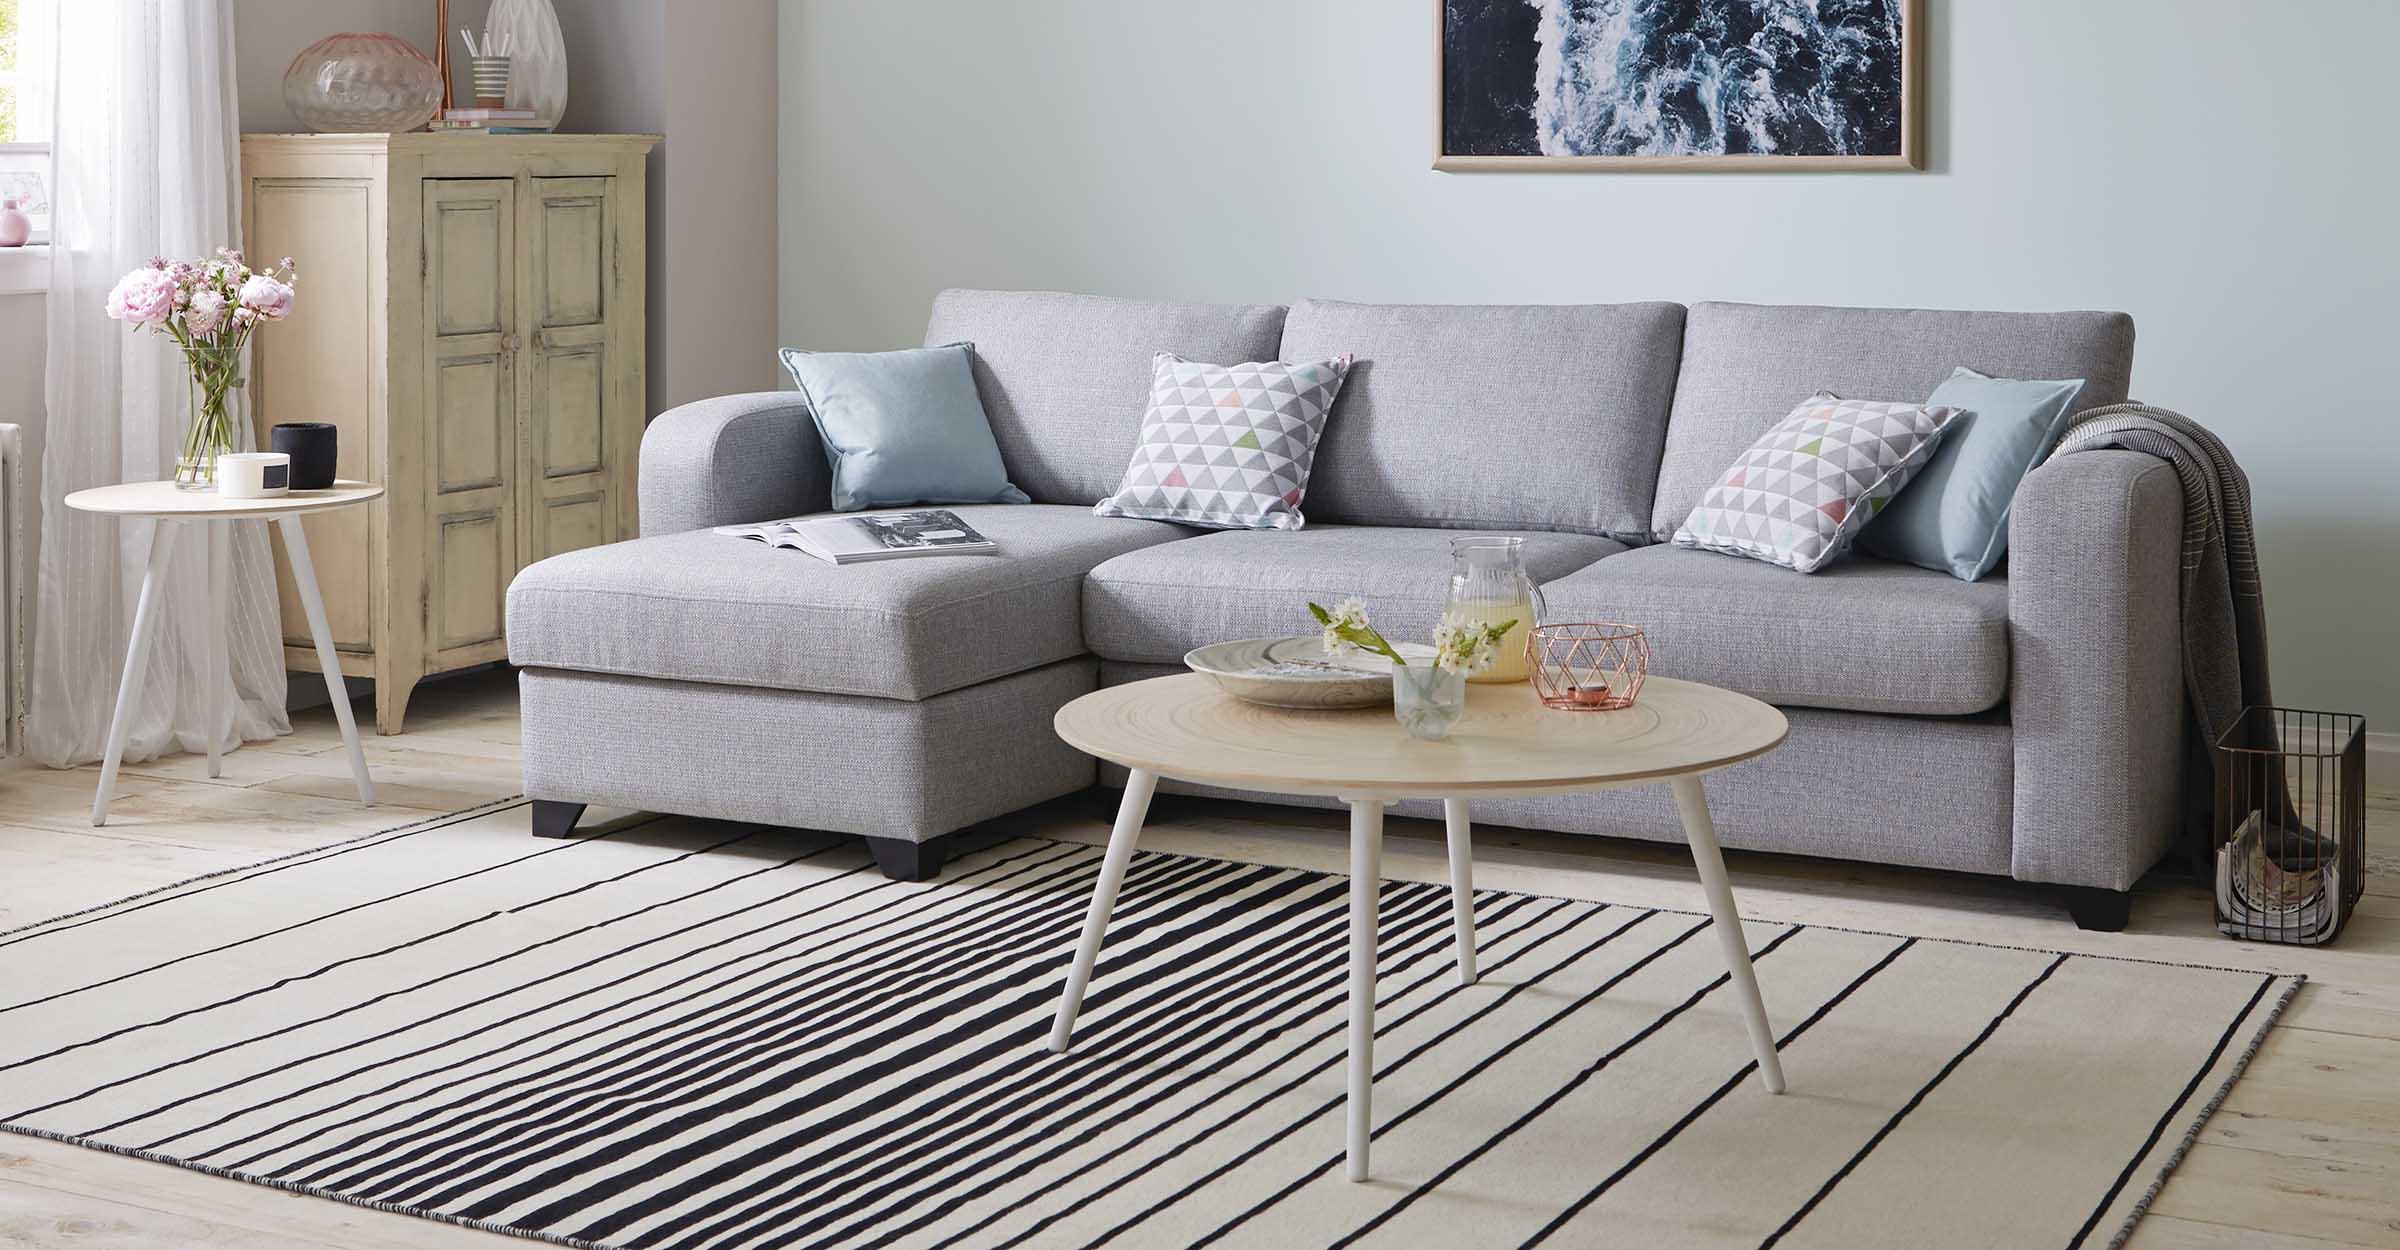 Modular Sofas Dfs, How To Arrange Living Room With Corner Sofa